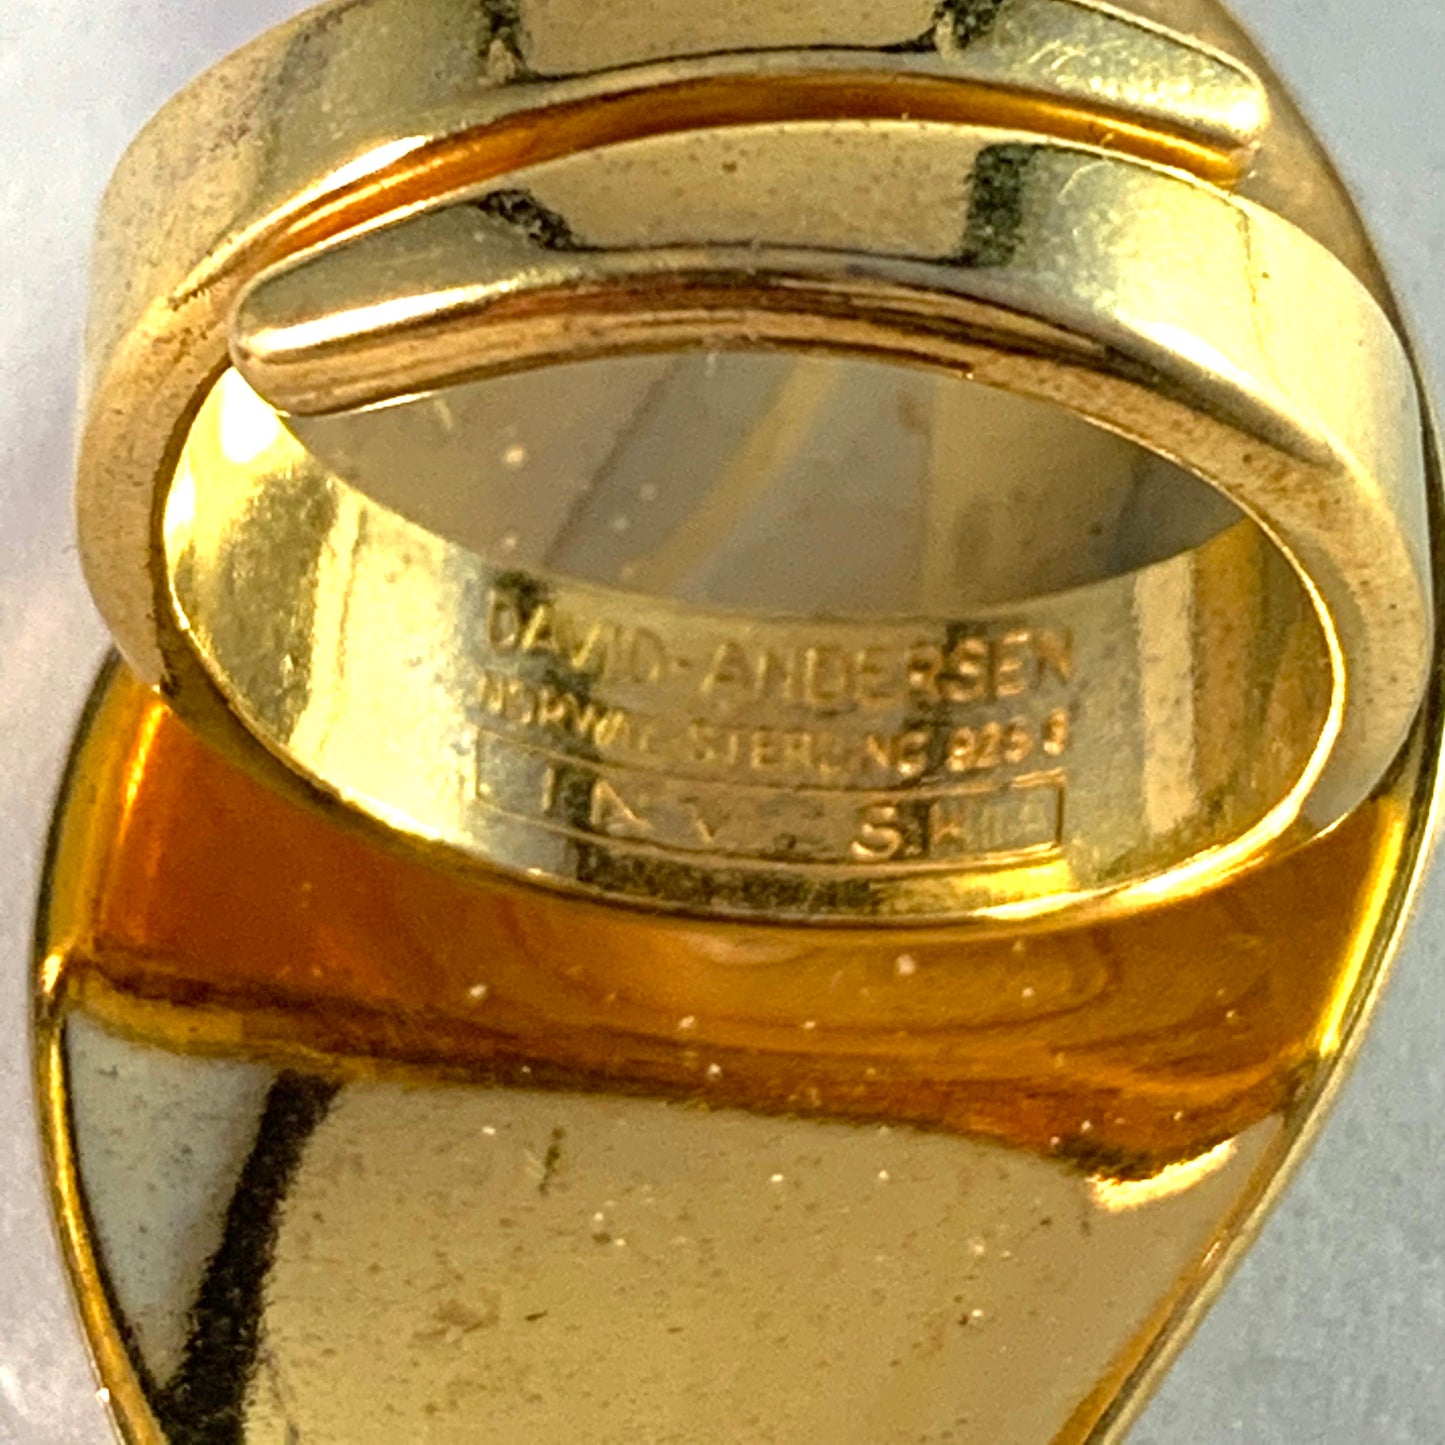 Synnøve Korssjøen, for David Andersen, Norway. Bold Vintage Sterling Silver White Enamel Ring.